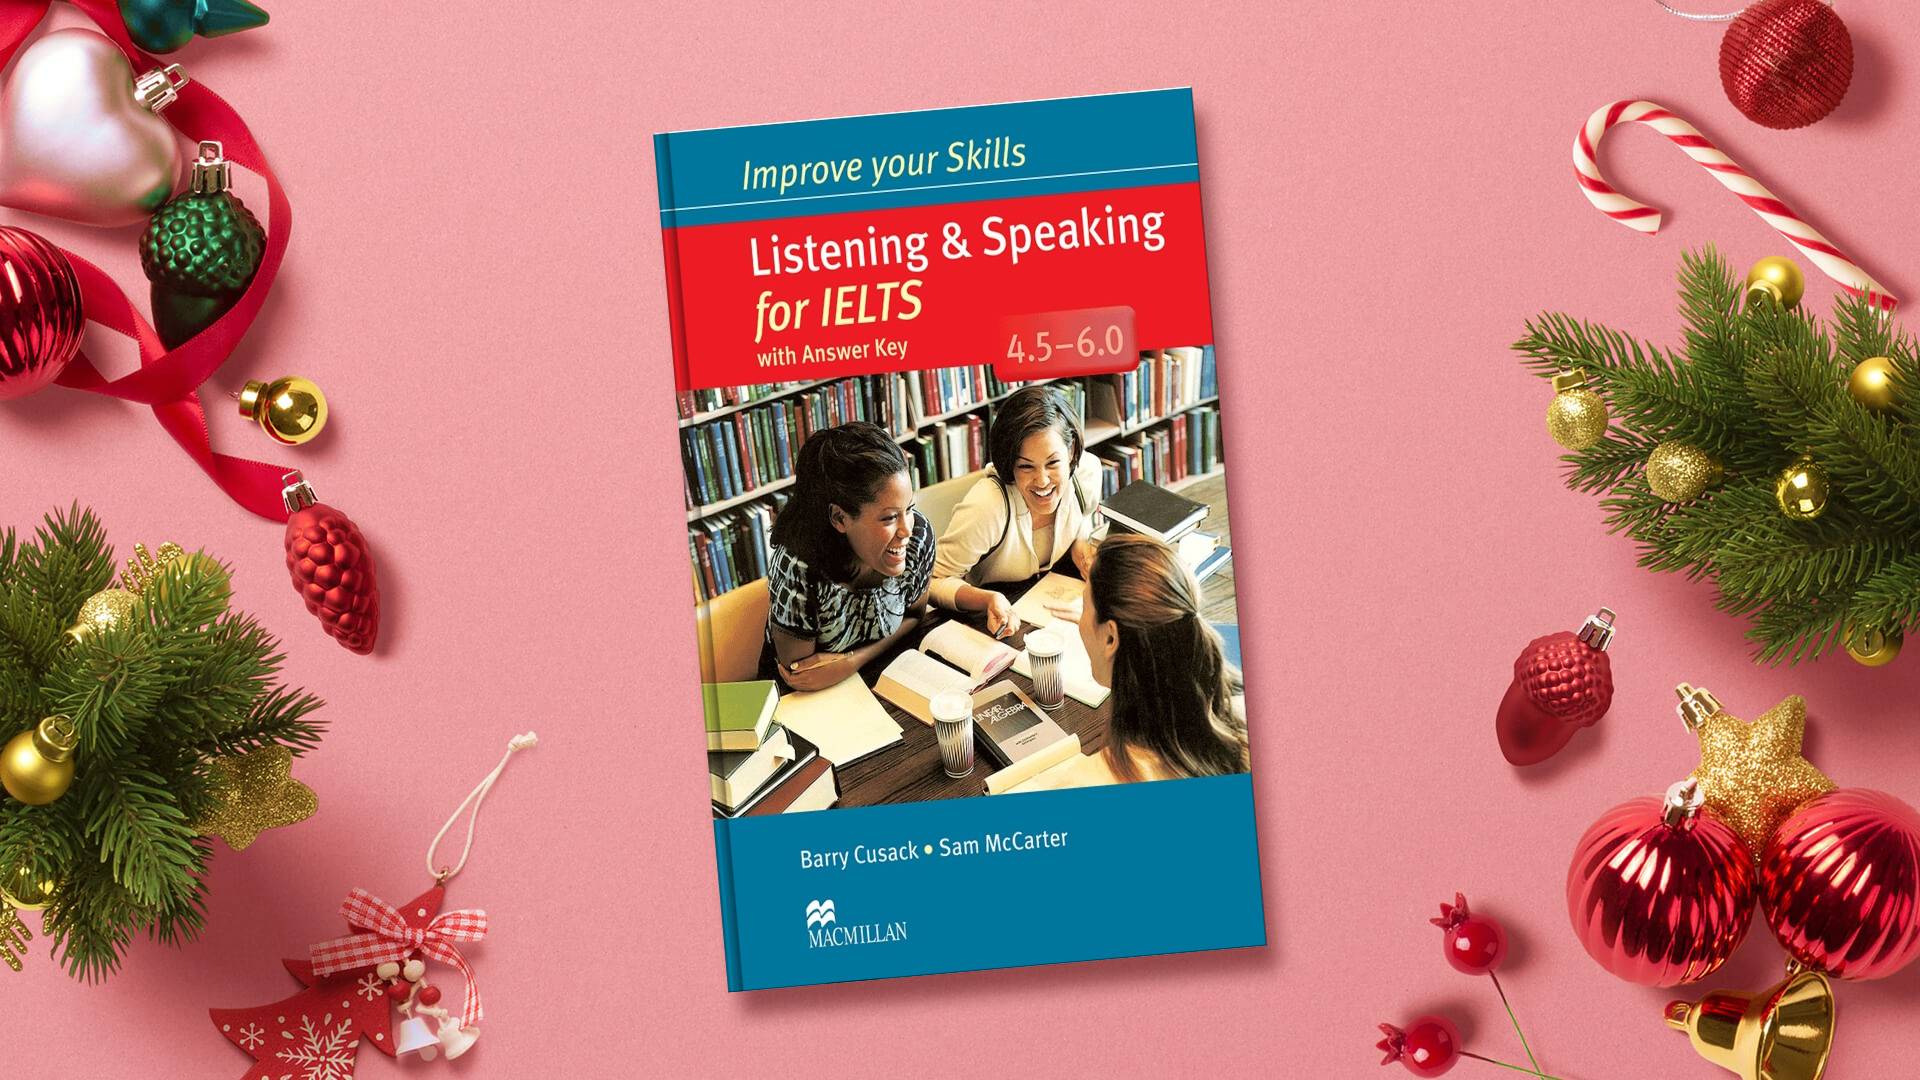 خرید کتاب زبان | فروشگاه اینترنتی کتاب زبان | Improve Your Skills Listening and speaking for IELTS 4.5-6.0 | ایمپرو یور اسکیلز لیسنینگ اند اسپیکینگ فور آیلتس